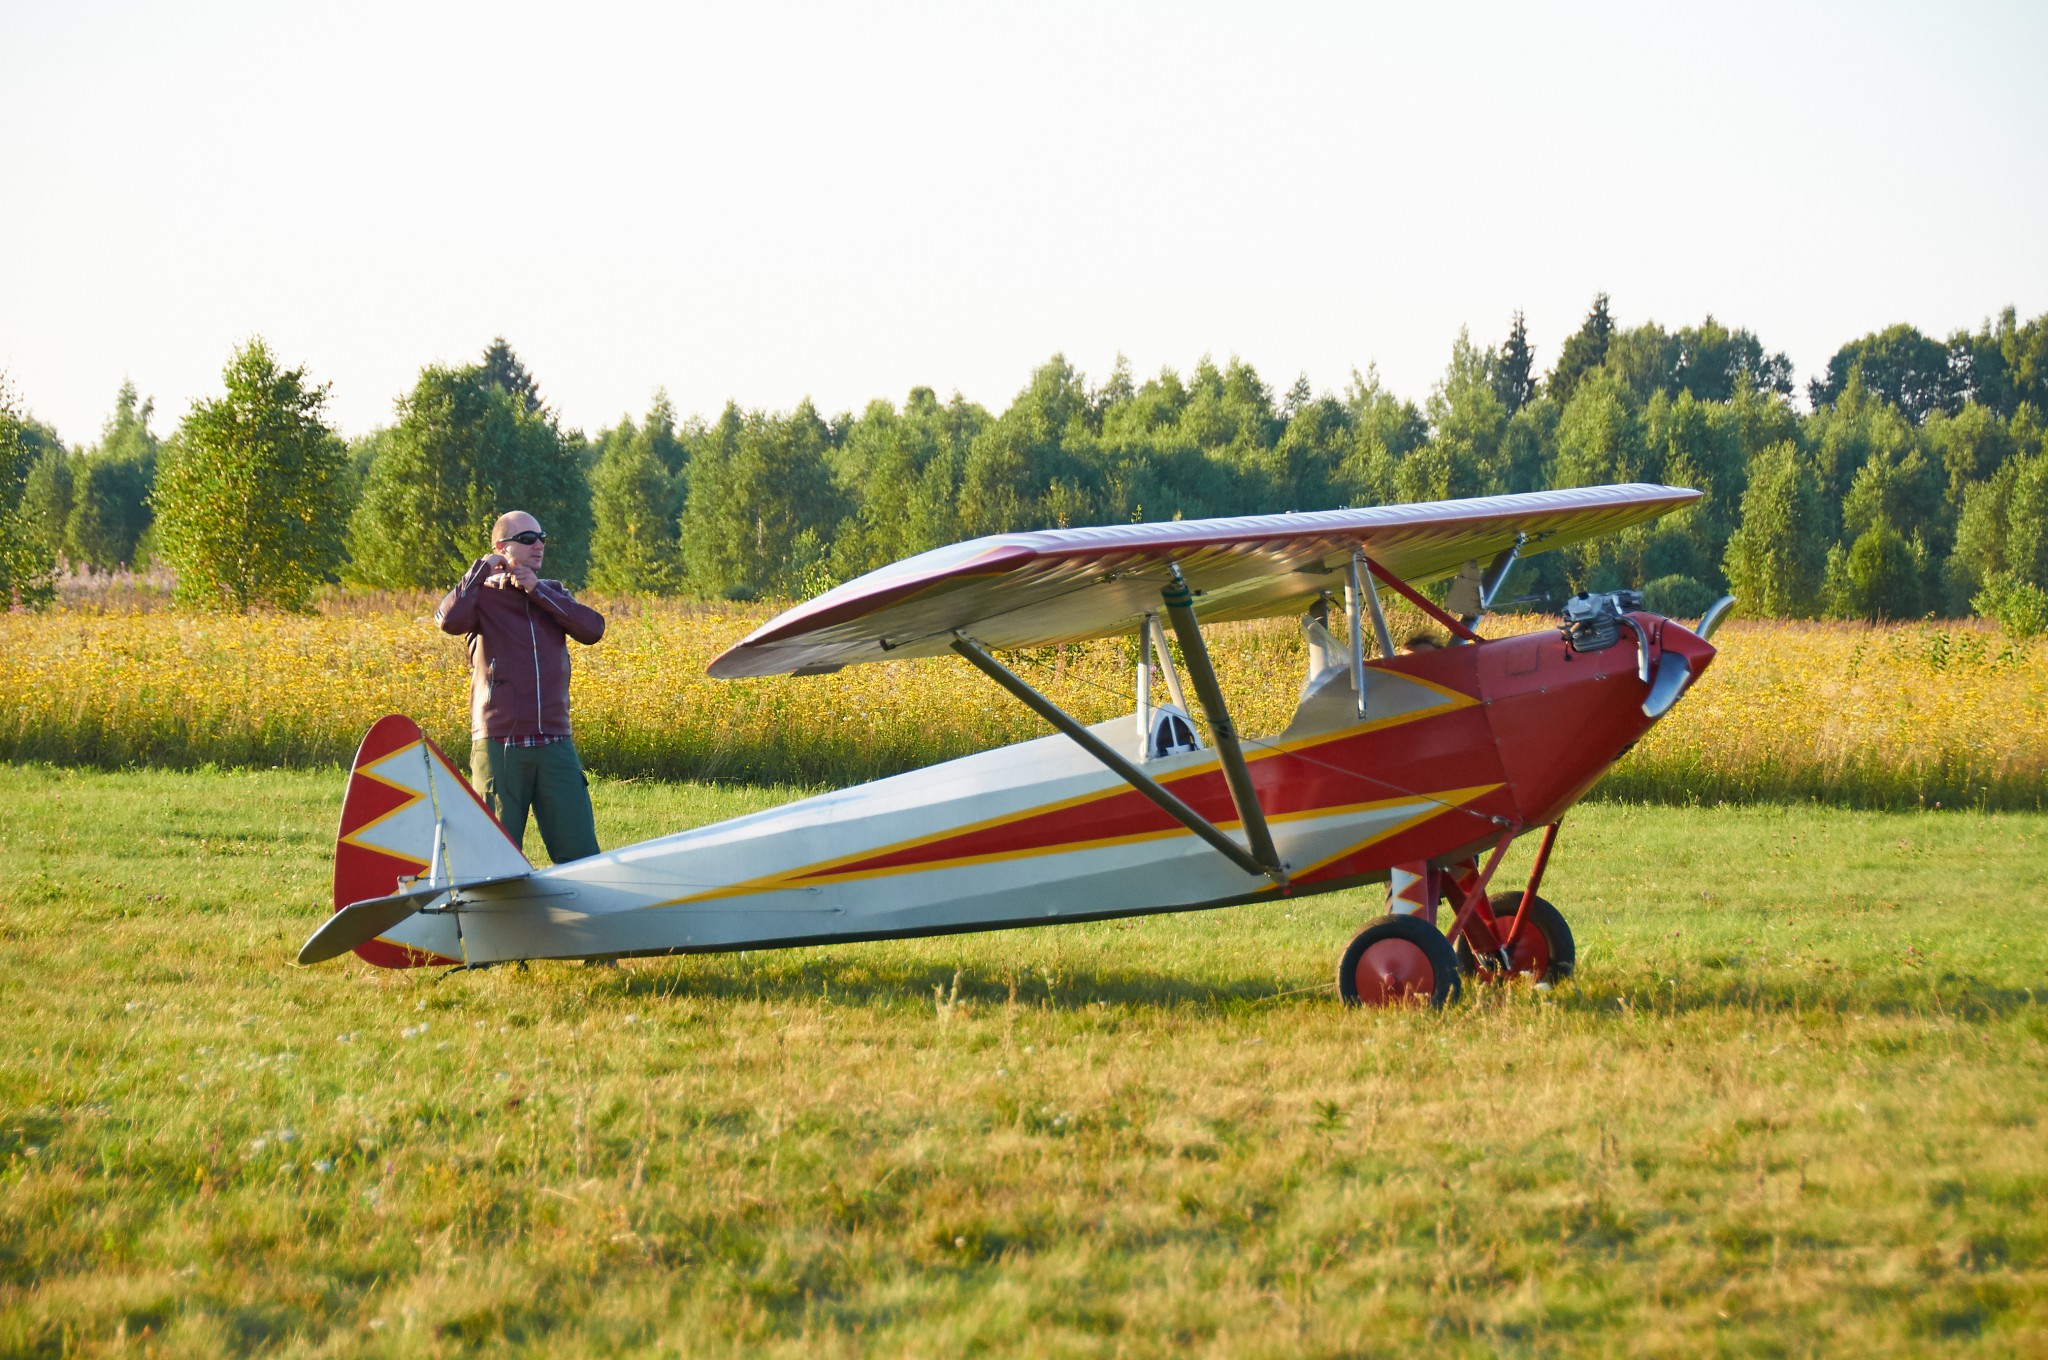 Andrey Yakovlev, pilot and owner of this Parasol ~ Андрей Яковлев, пилот и владелец Парасольки